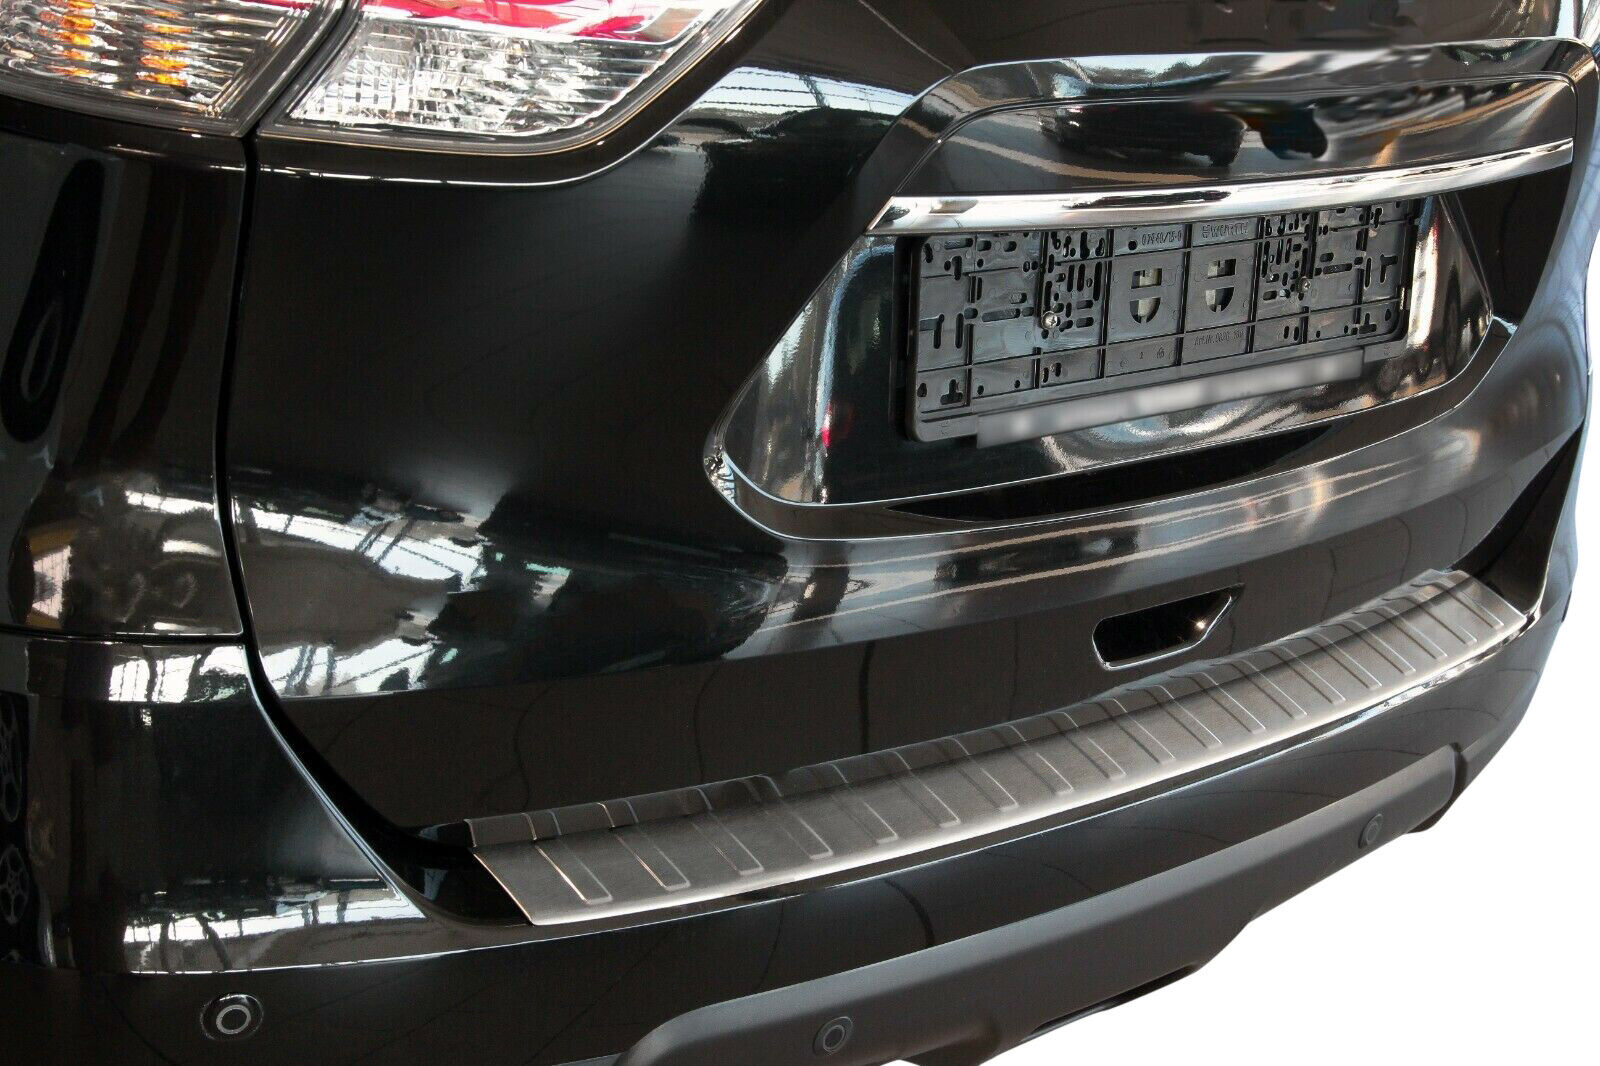 LADEKANTENSCHUTZ Edelstahl MATT Leiste Schutz für Audi Q3 8U ab 2011-2014 |  eBay